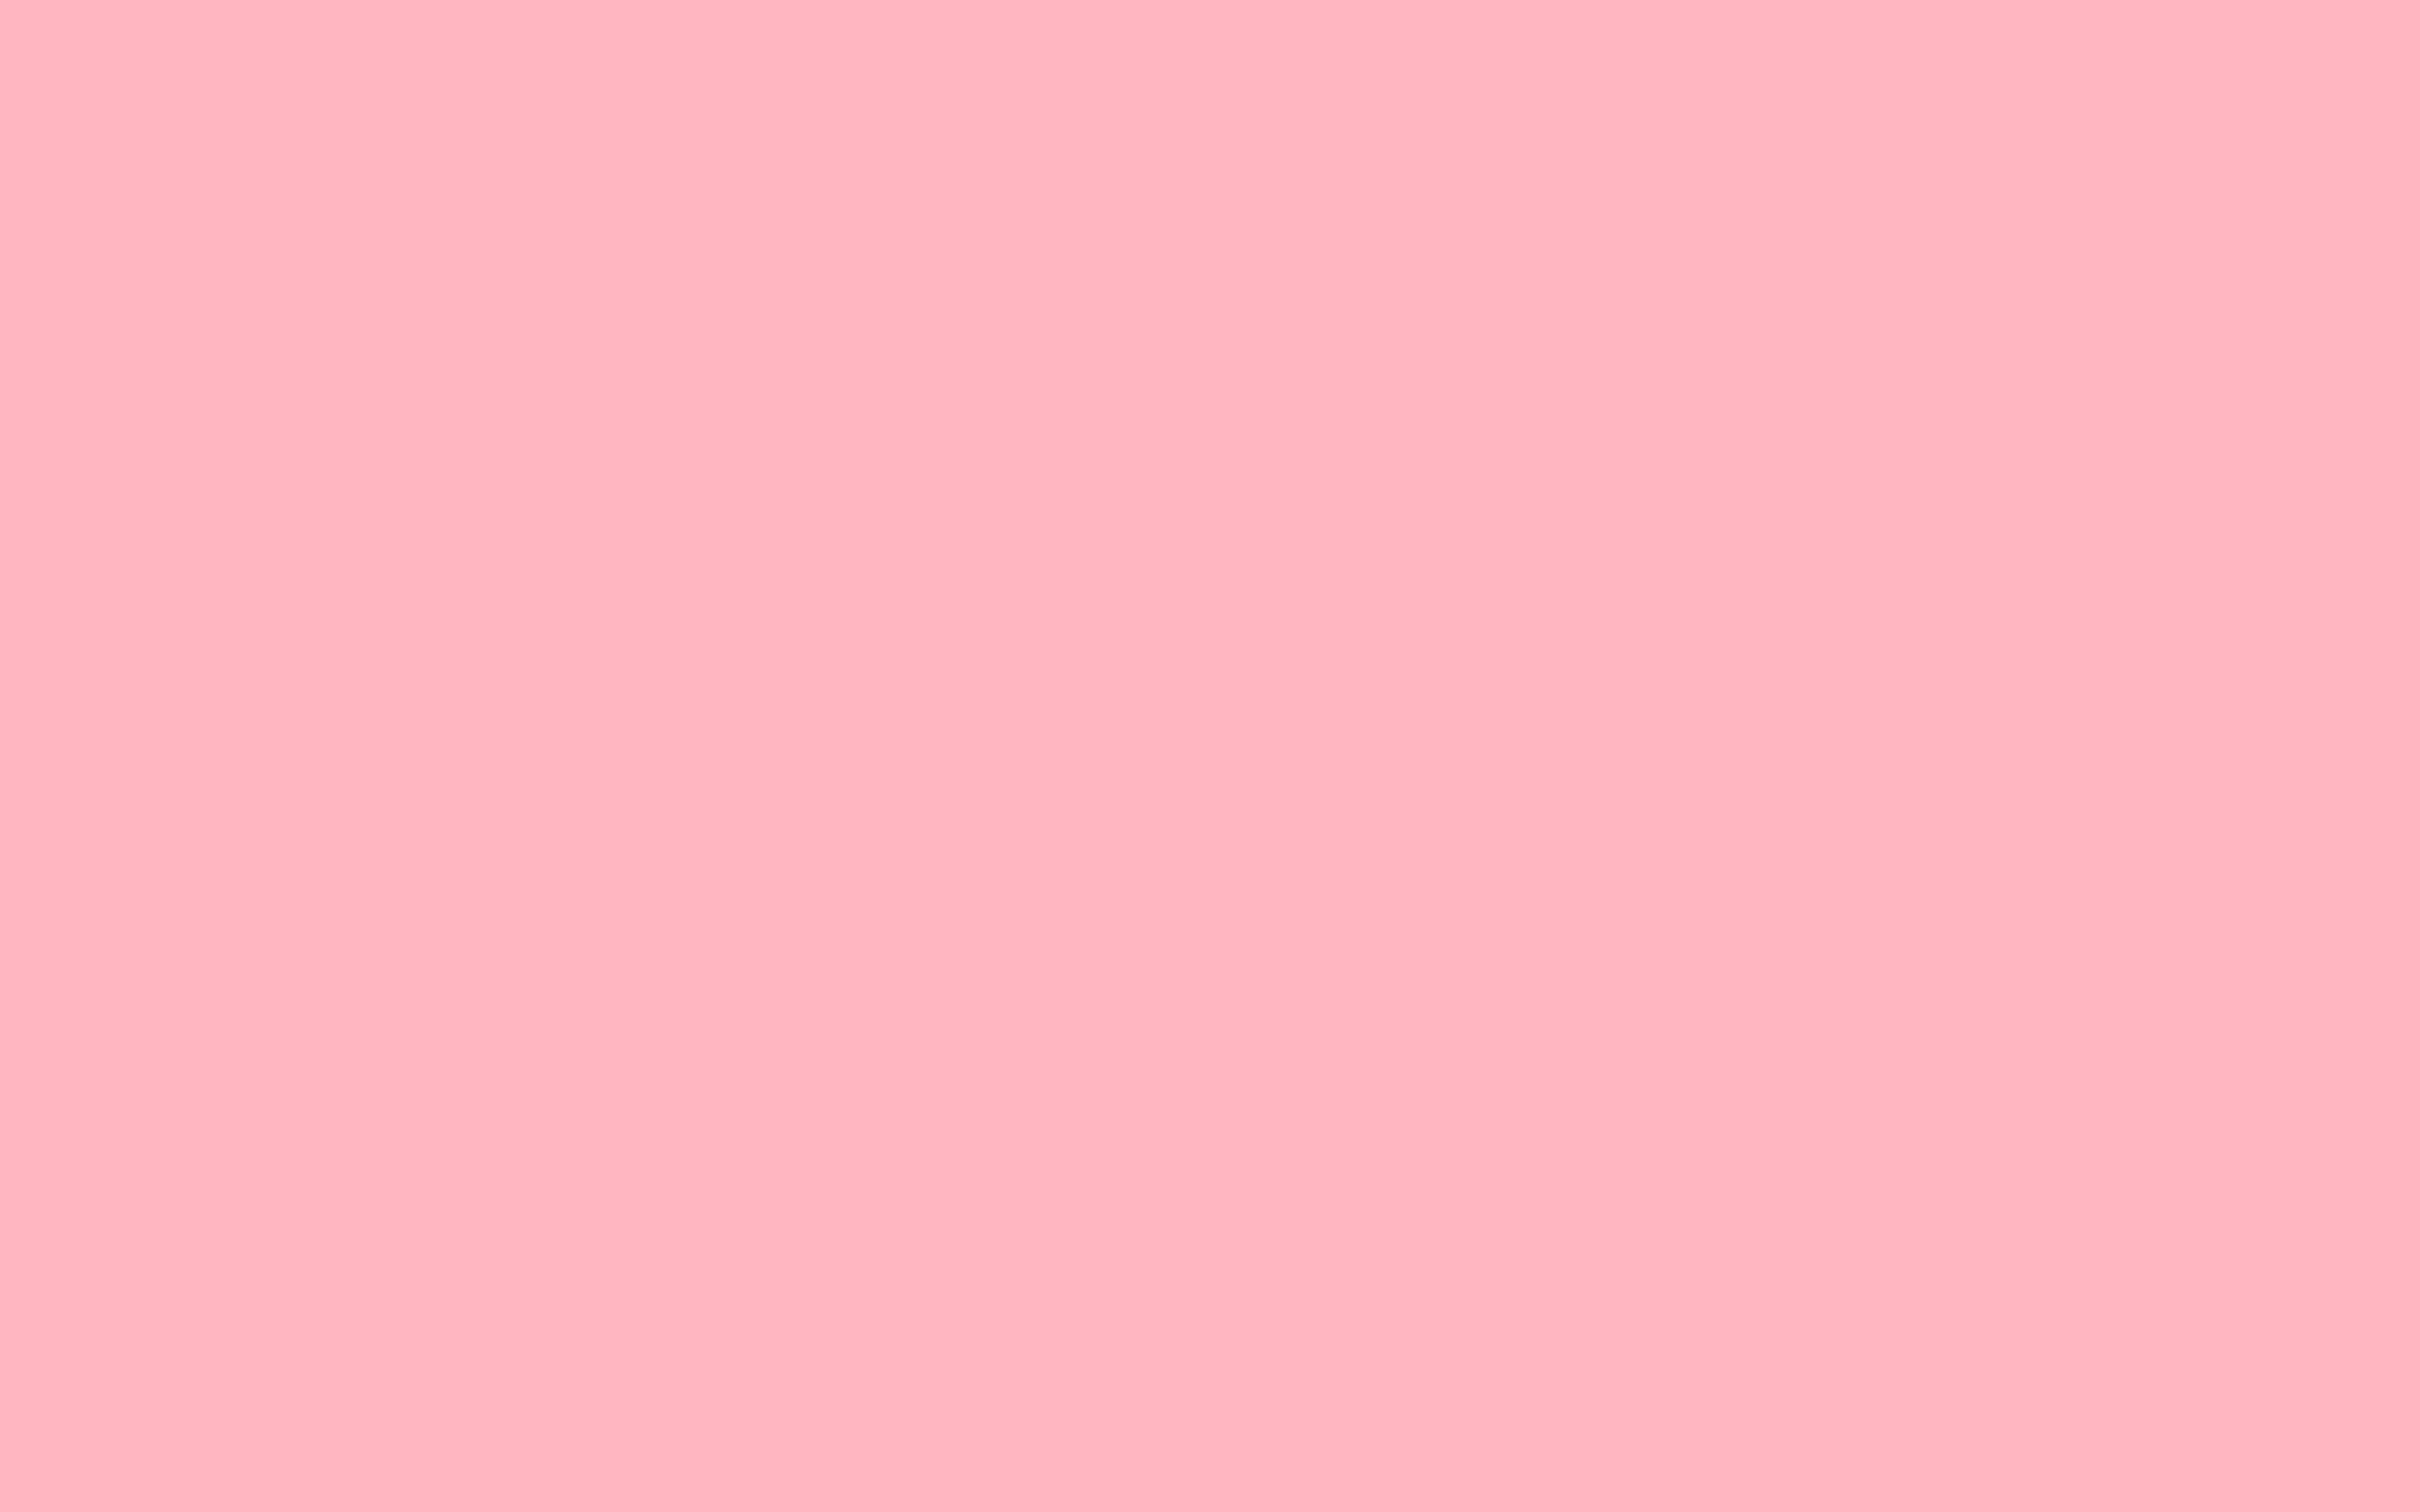 Image Light Pink Solid Color Background Jpg